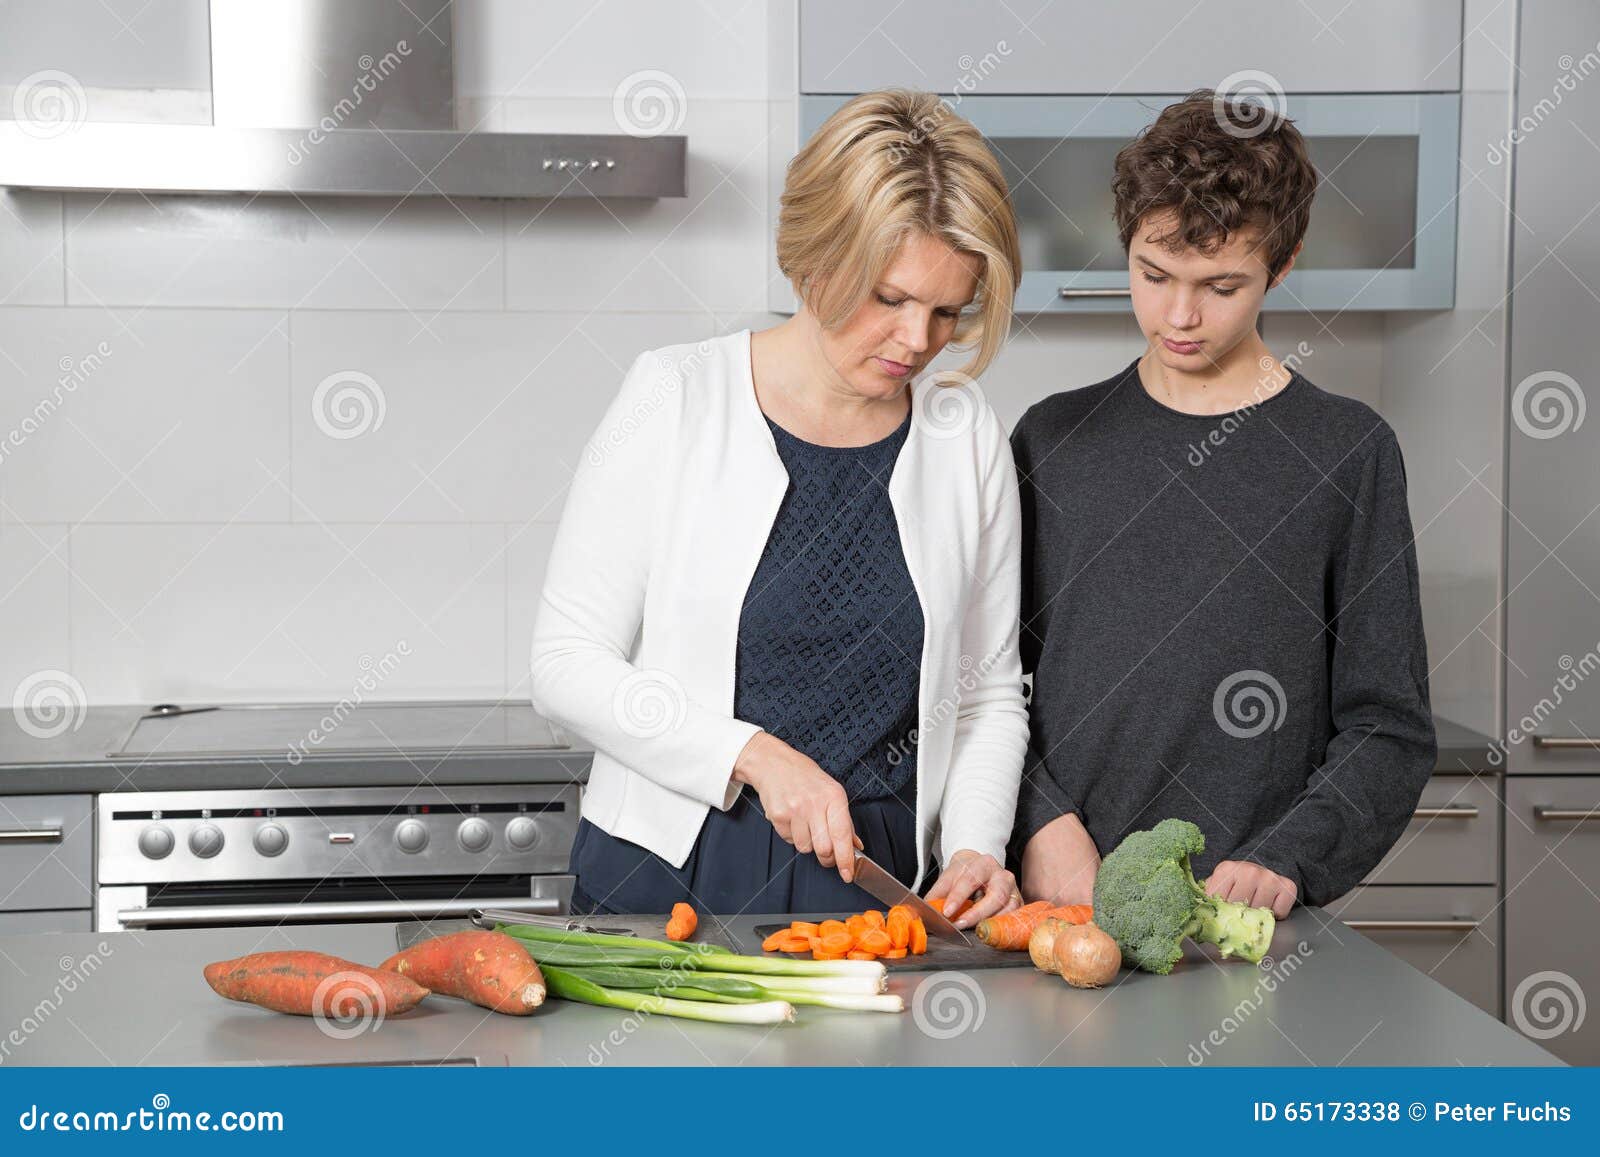 Сын мать на кухне видео. Кухня и сын. Мама и подросток на кухне. Фотосессия мама с сыном на кухне.